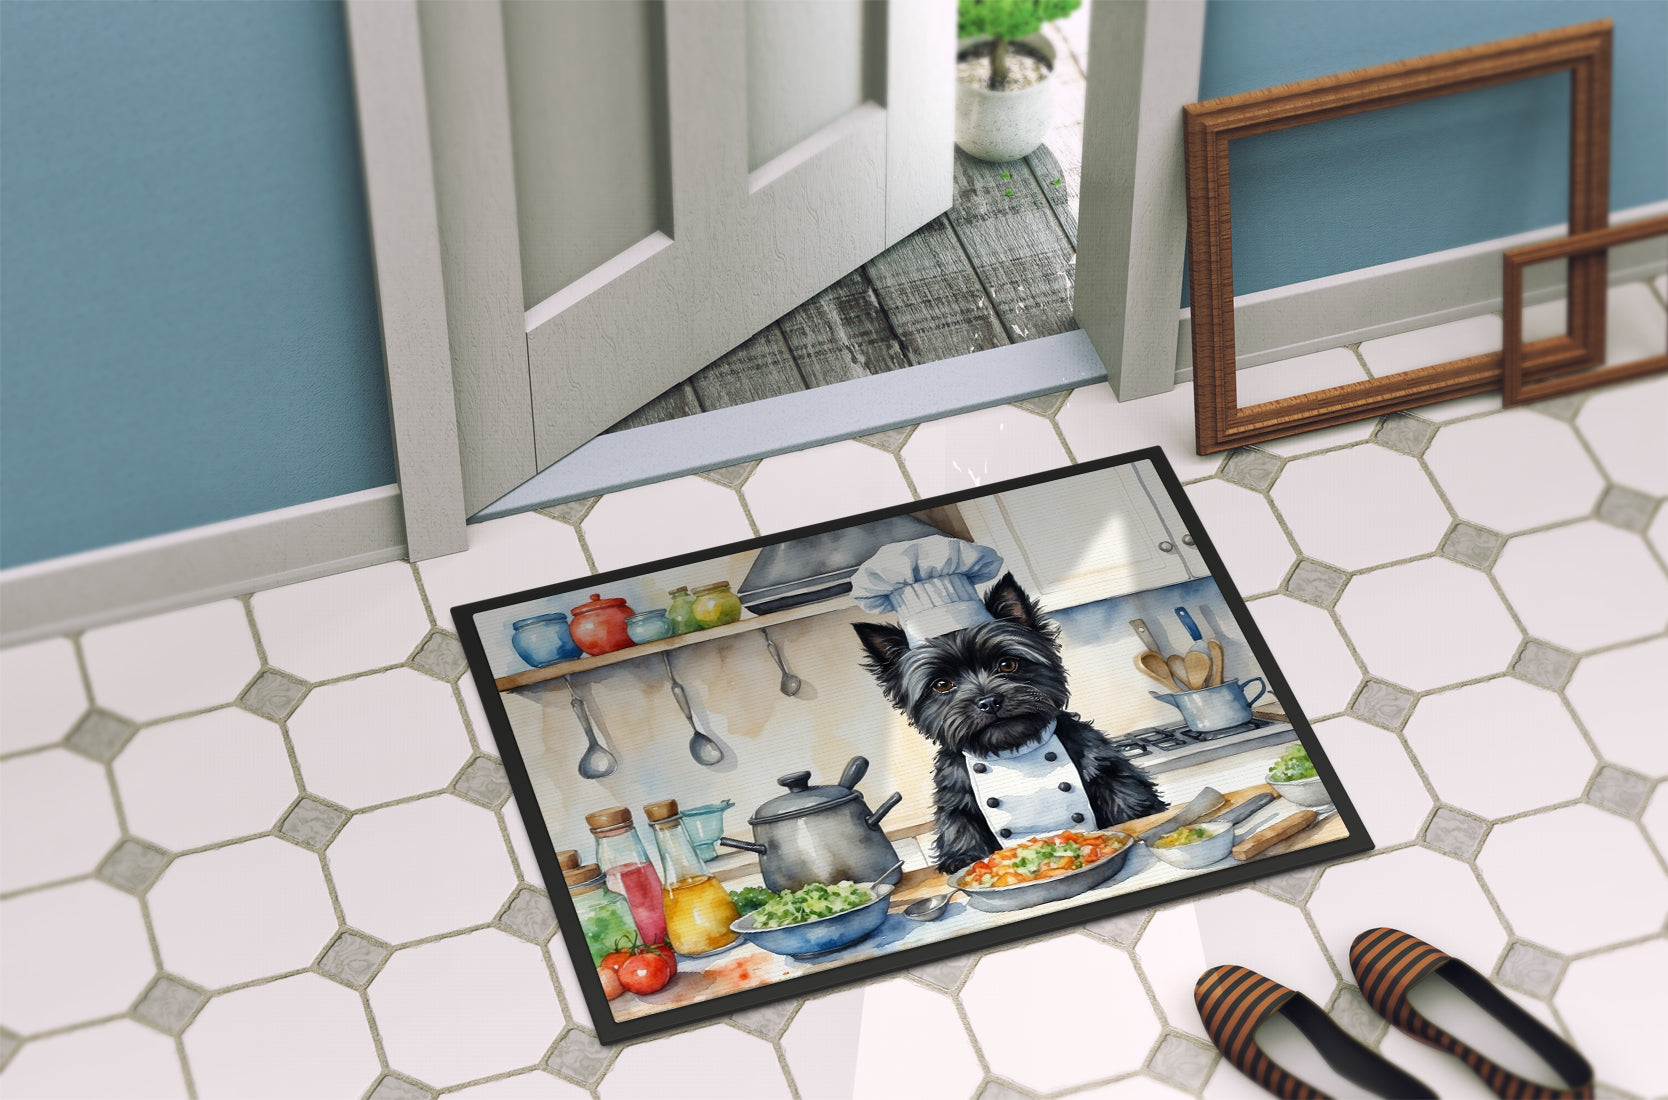 Cairn Terrier The Chef Doormat